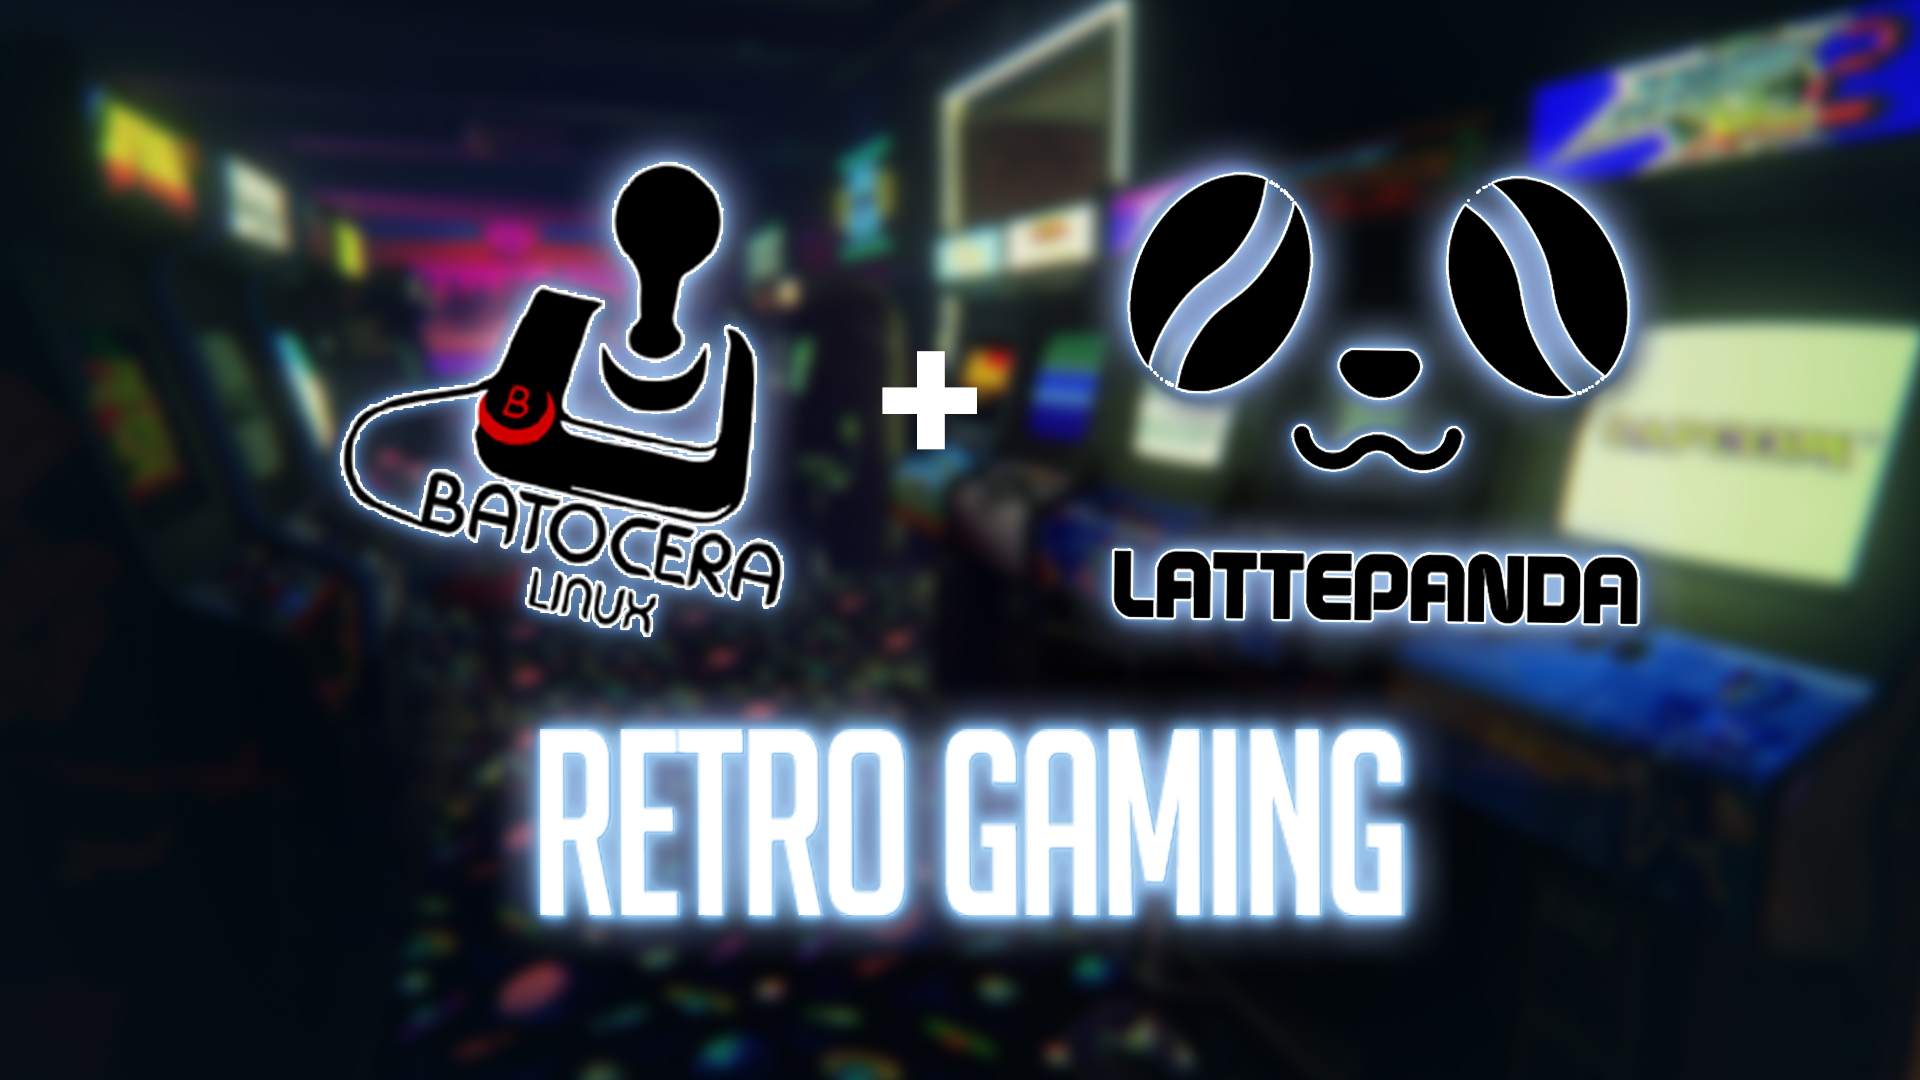 Retro Gaming - Batocera on LattePanda